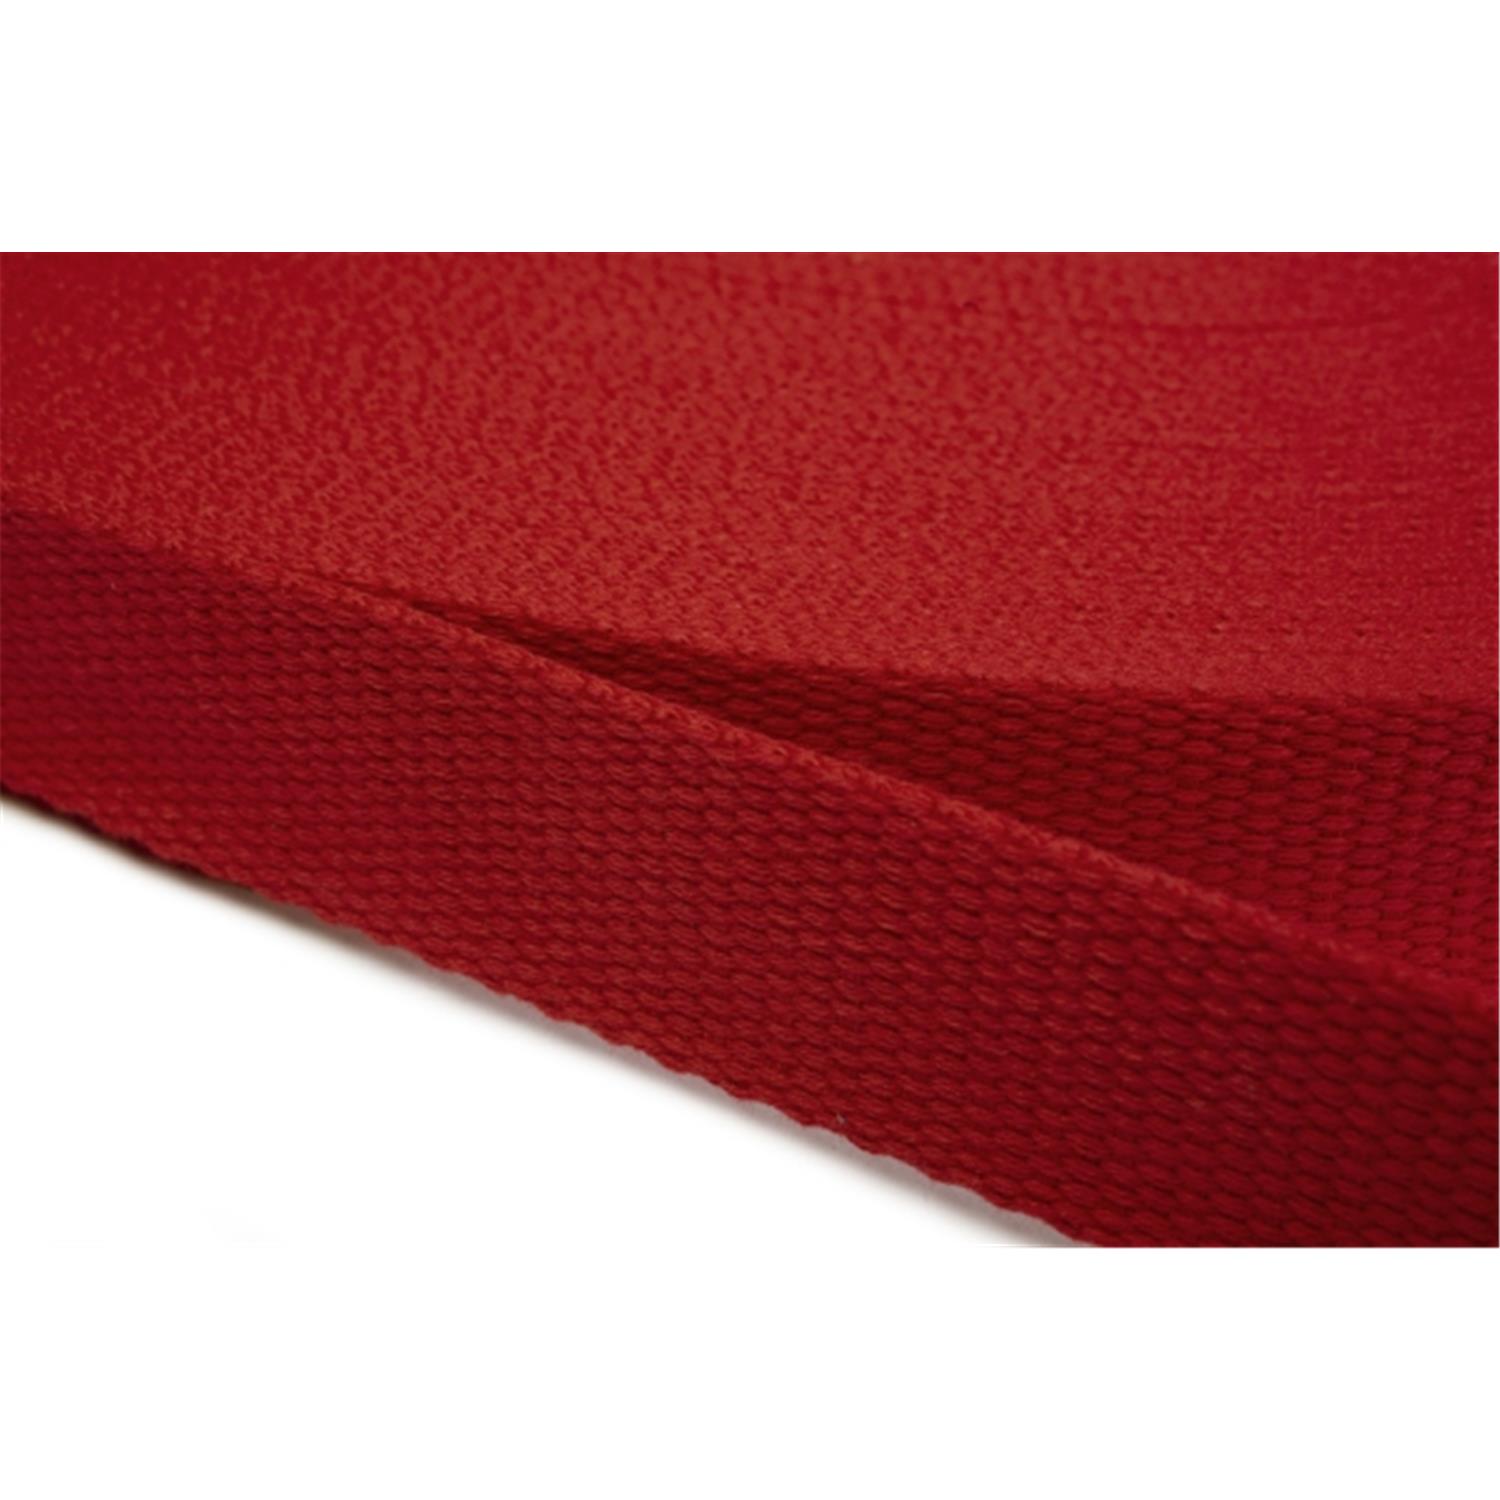 Gurtband aus Baumwolle 40mm in 20 Farben 10 - rot 6 Meter